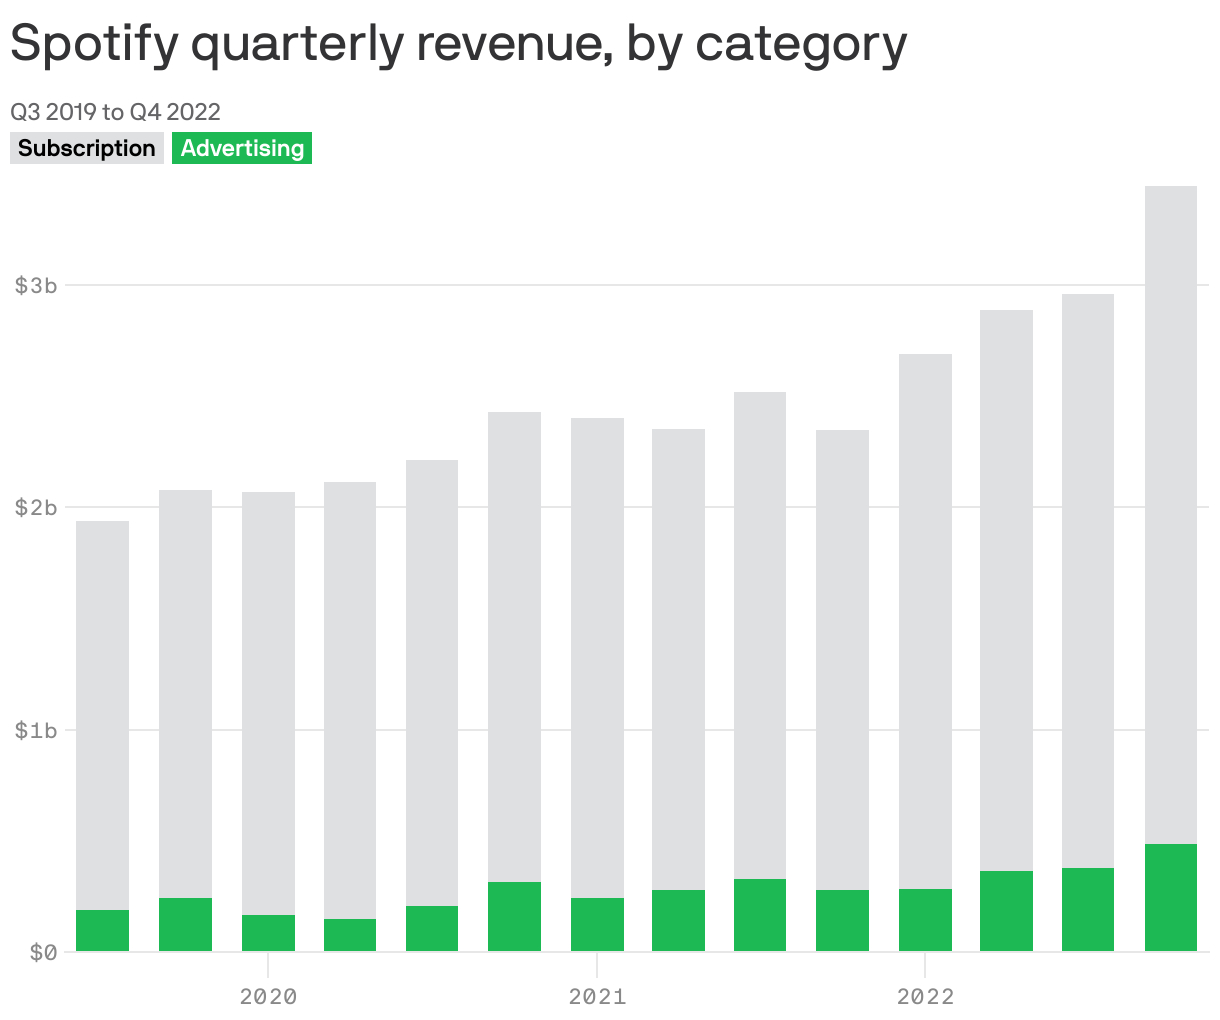 Spotify quarterly revenue, by category